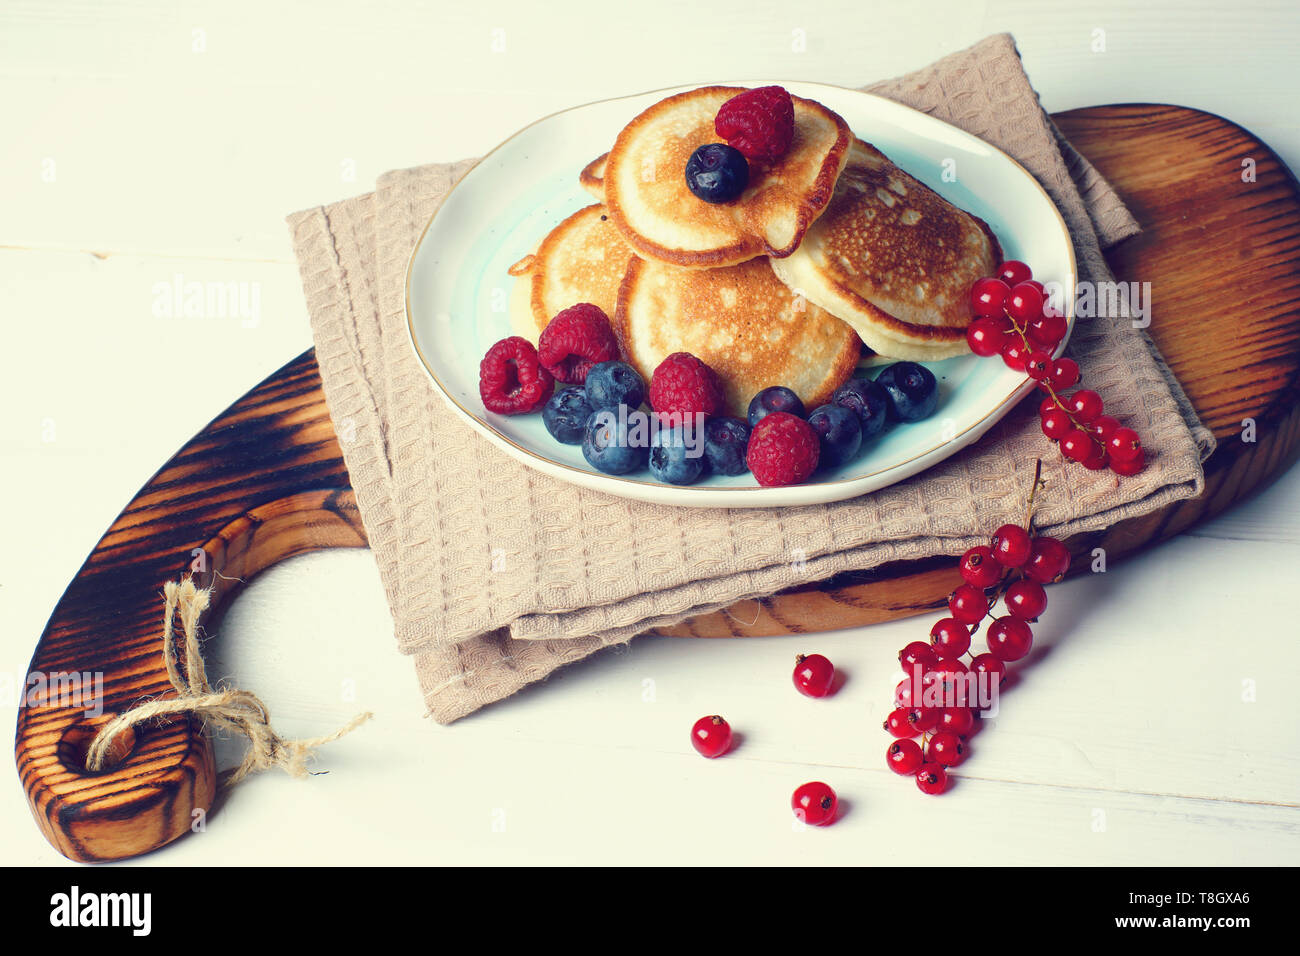 Su un tavolo bianco si erge una tavola di legno con colazione, appena sfornato pancake con frutti di bosco freschi di ribes, mirtilli e lamponi. Foto Stock